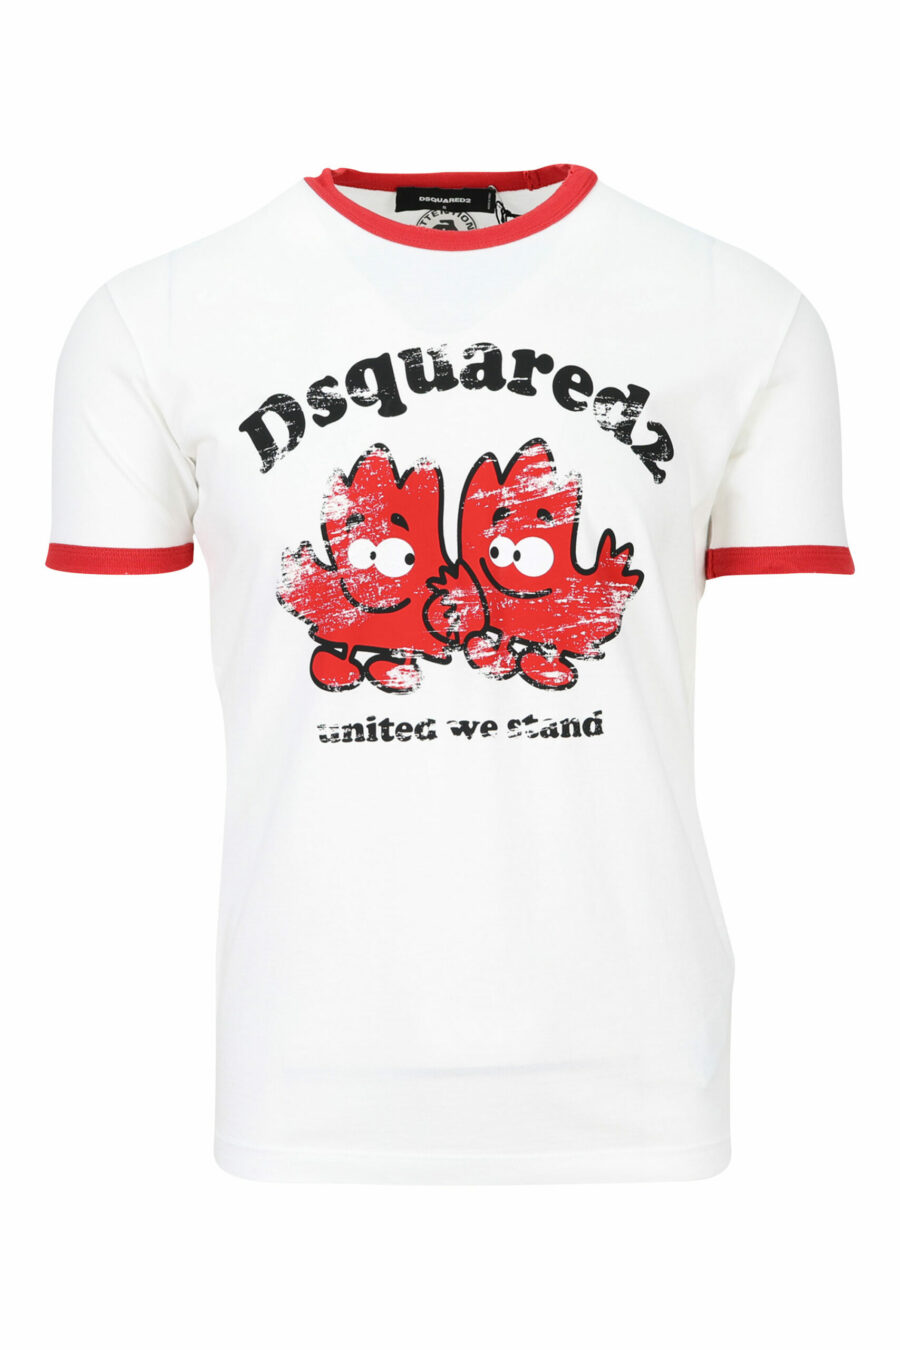 Weißes T-Shirt mit roten Details und Blattdruck - 8054148150792 skaliert